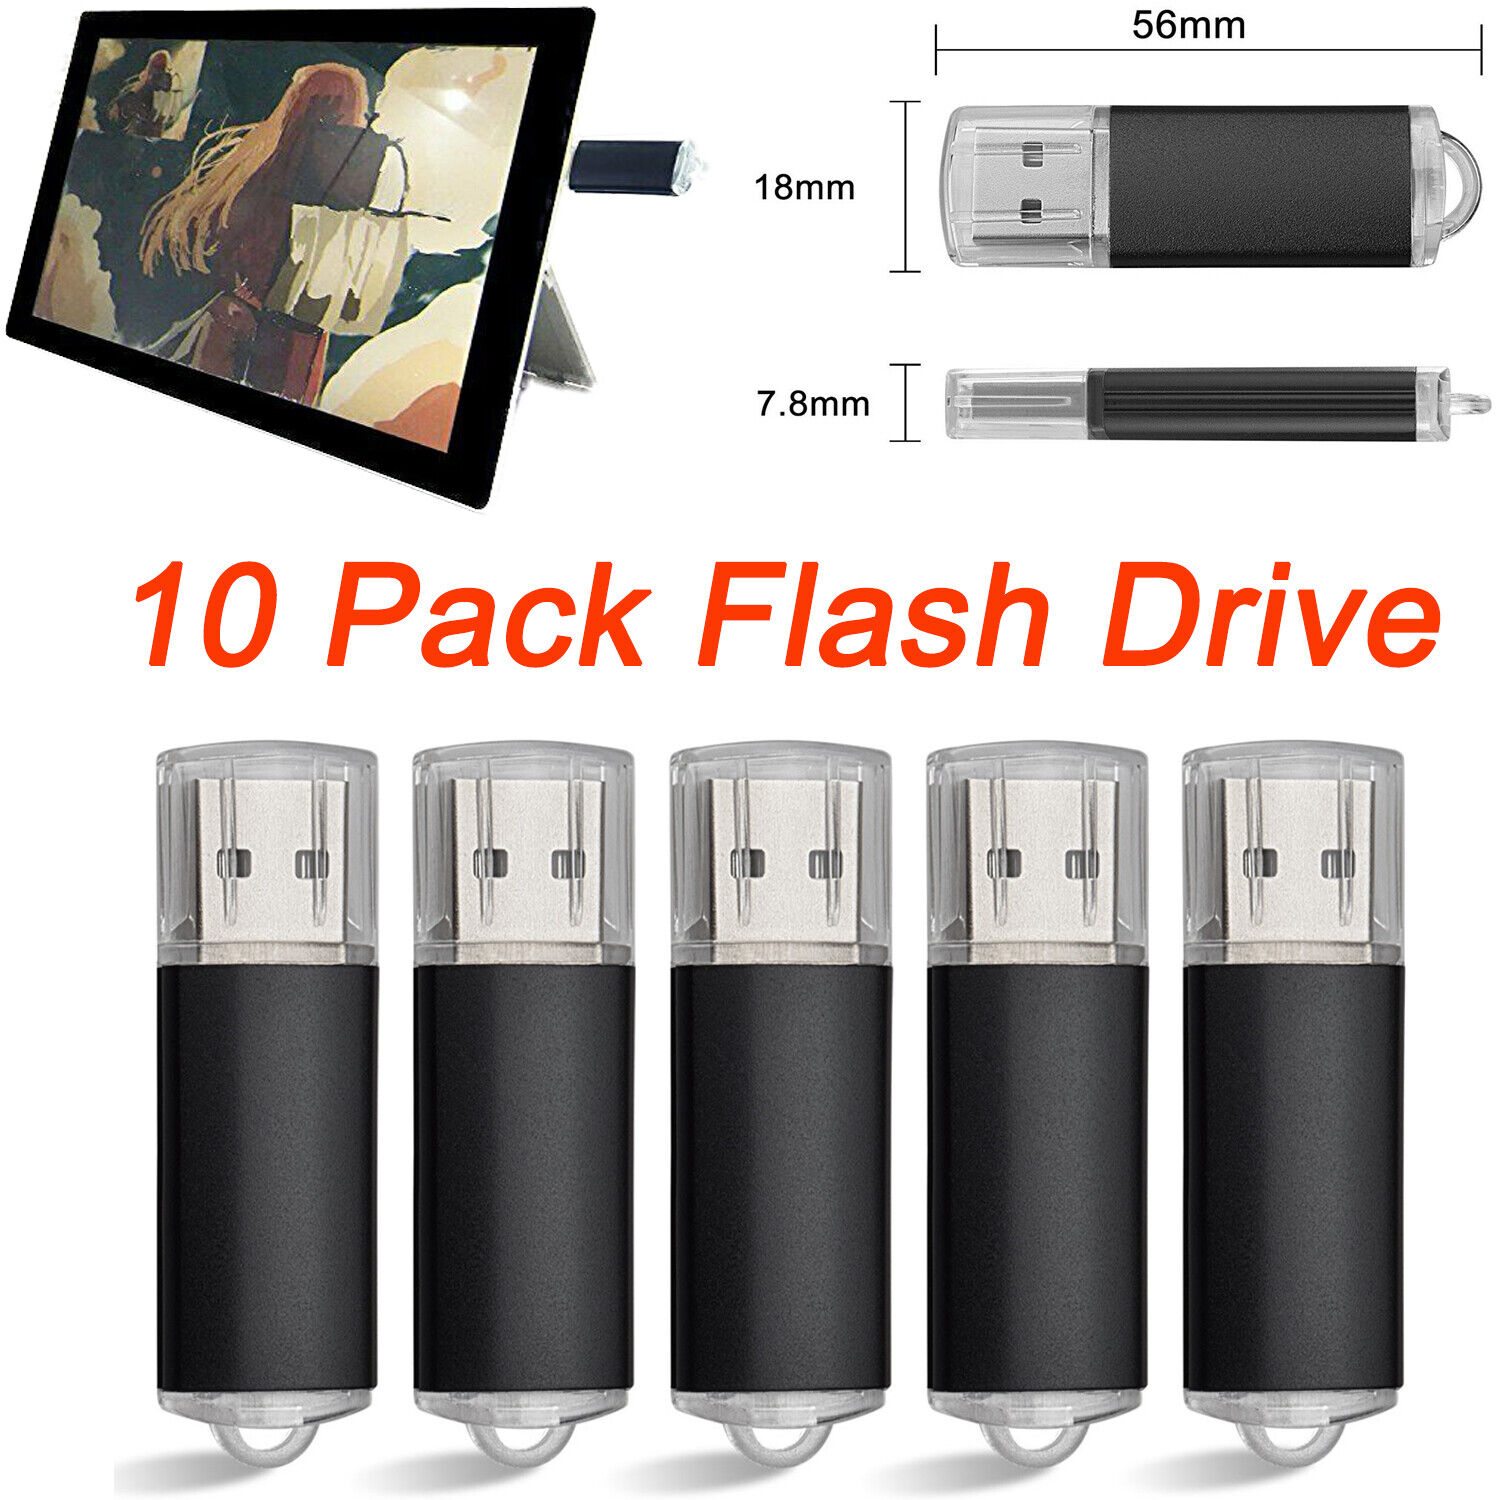 10PCS 16GB USB 2.0 Flash Drive Memory Sticks Thumb Drives Storage Disk USB Drive